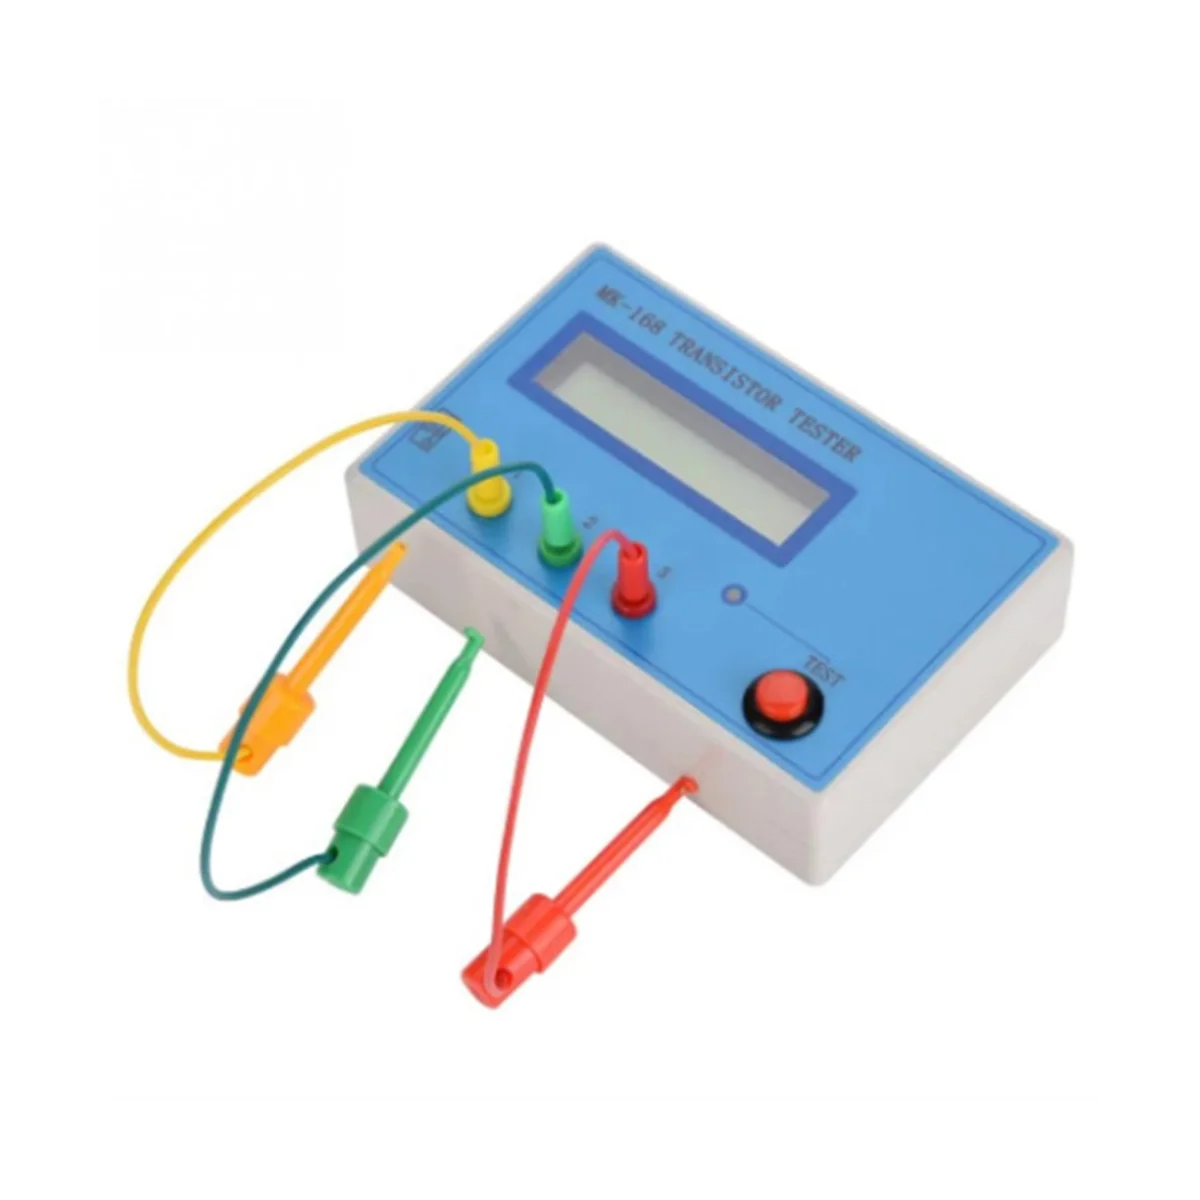 Транзисторный тестер MK-168, Измеряющий Сопротивление, Индуктивность конденсатора, Измеритель Rlc, Напряжение RLC, NPN, PNP, MOS-метр